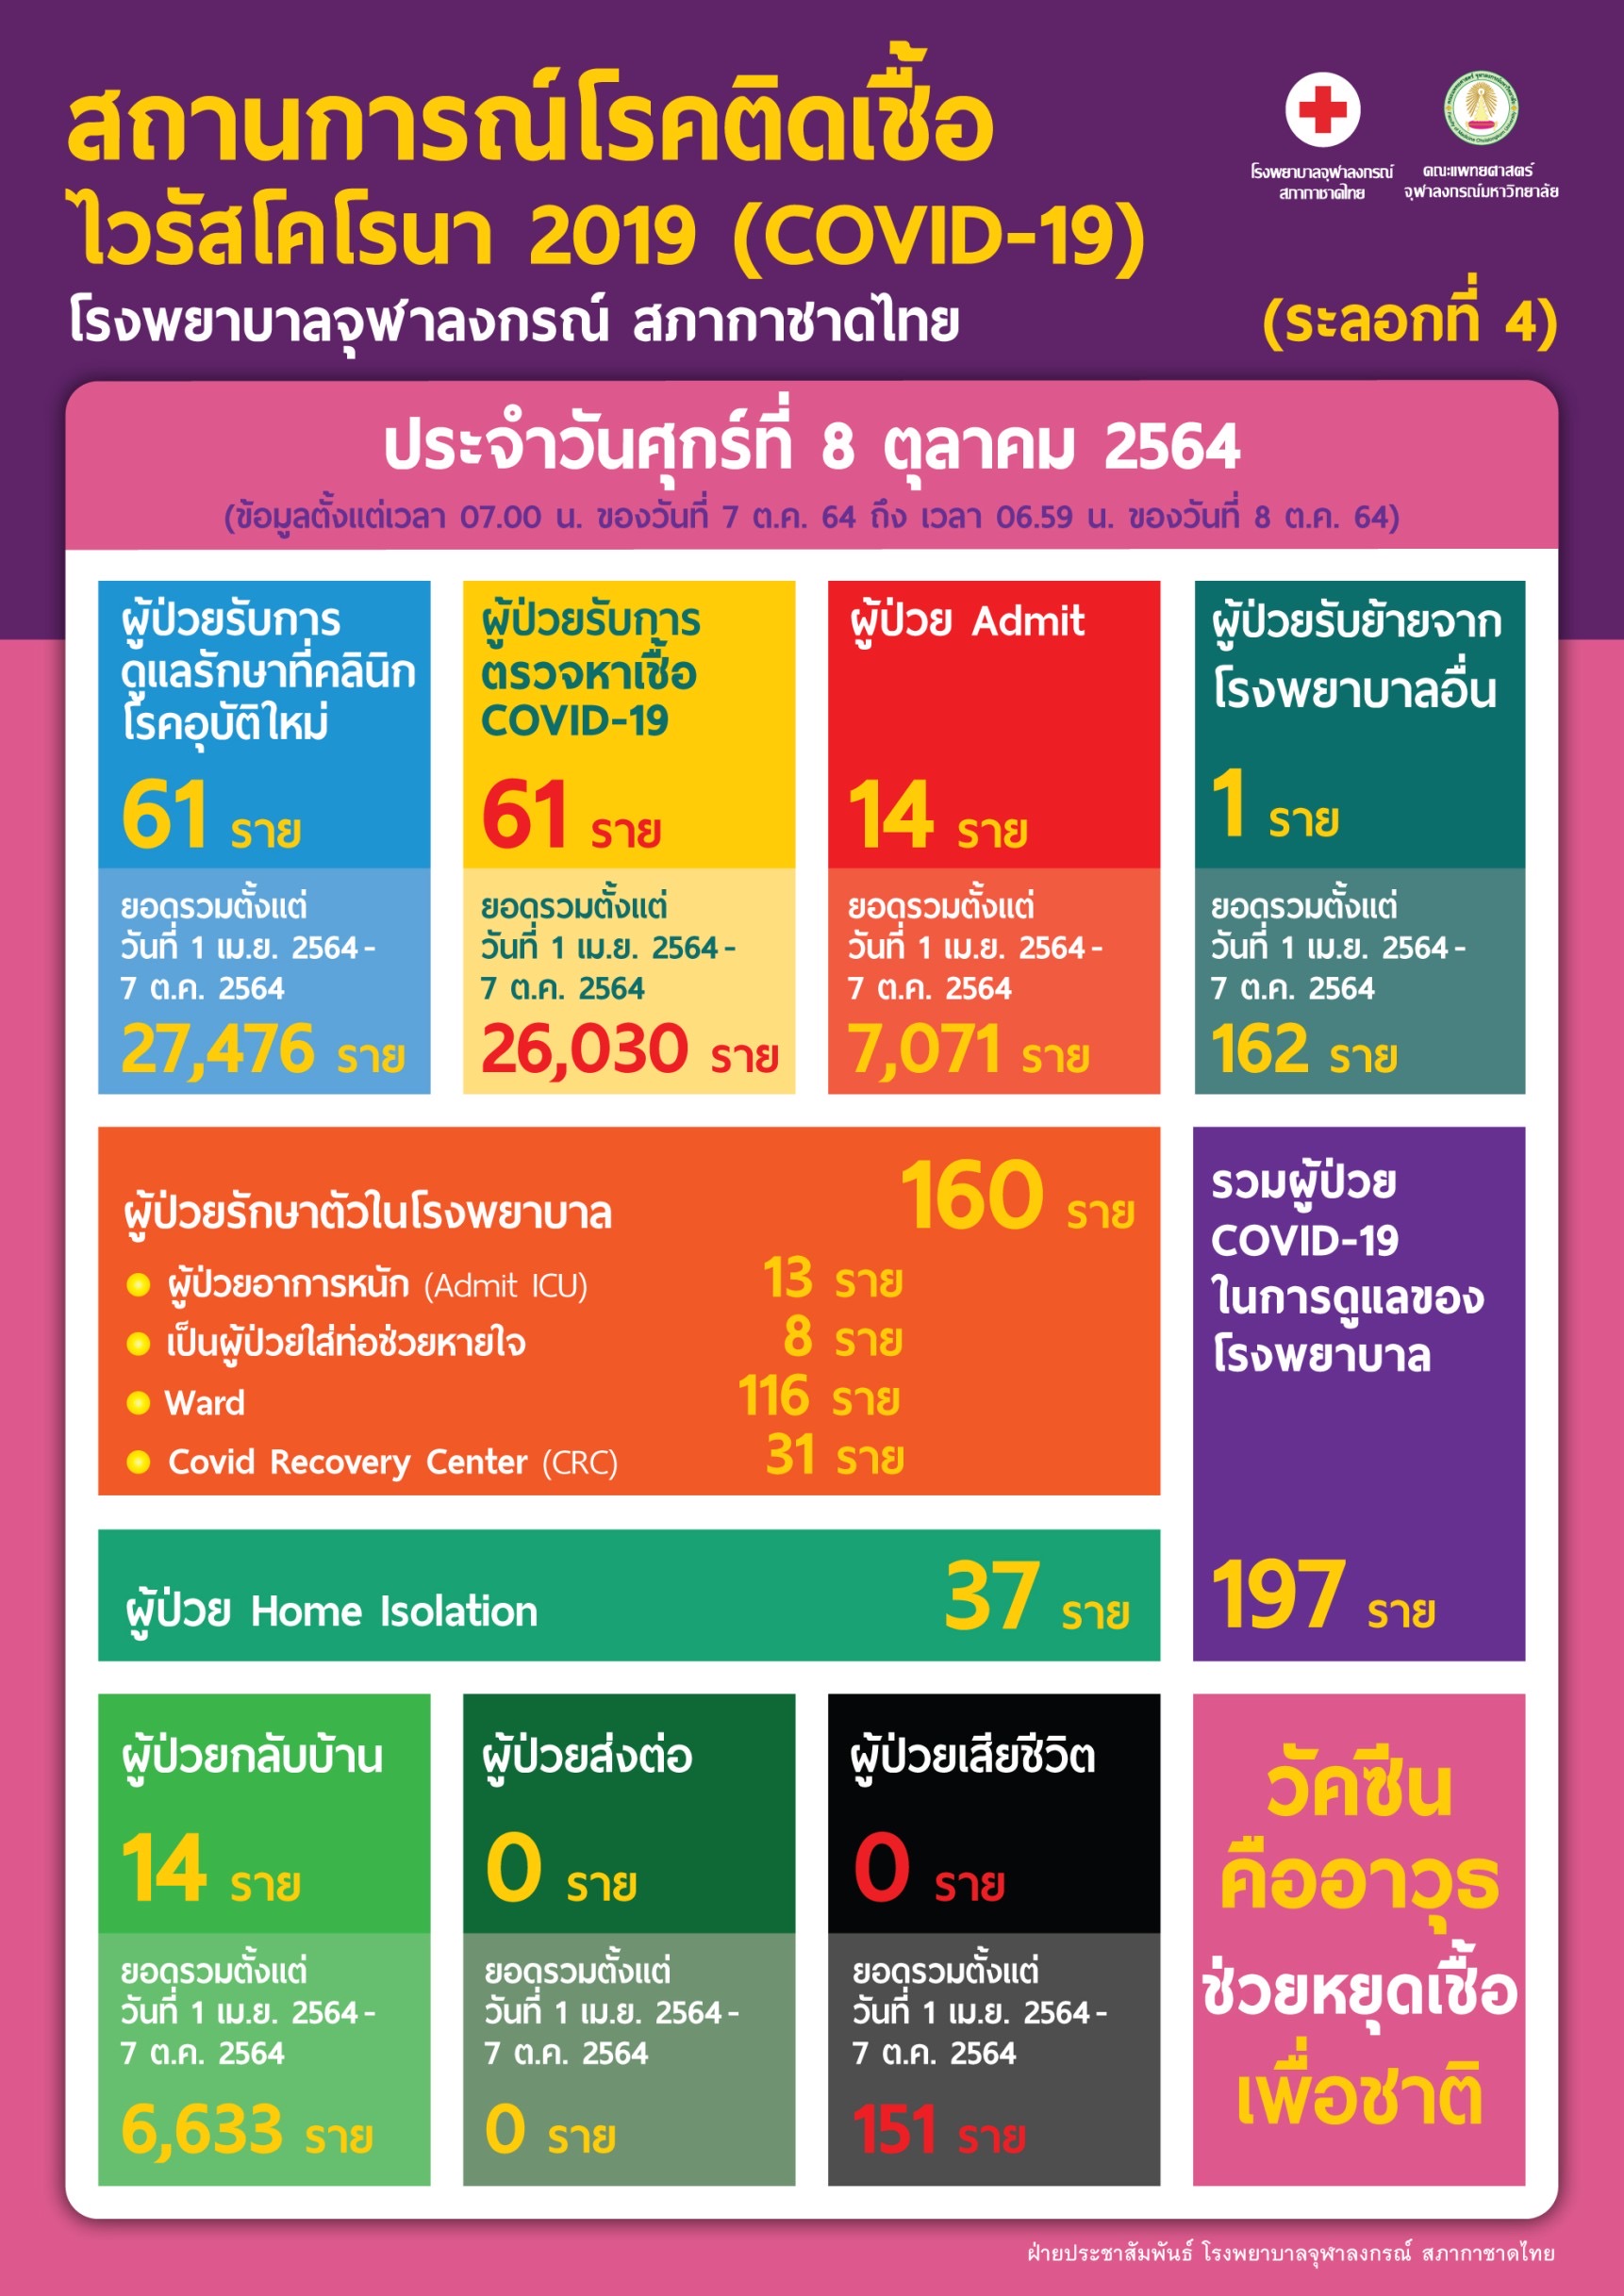 สถานการณ์โรคติดเชื้อ ไวรัสโคโรนา 2019 (COVID-19) โรงพยาบาลจุฬาลงกรณ์ สภากาชาดไทย ประจำวันศุกร์ที่ 8 ตุลาคม 2564